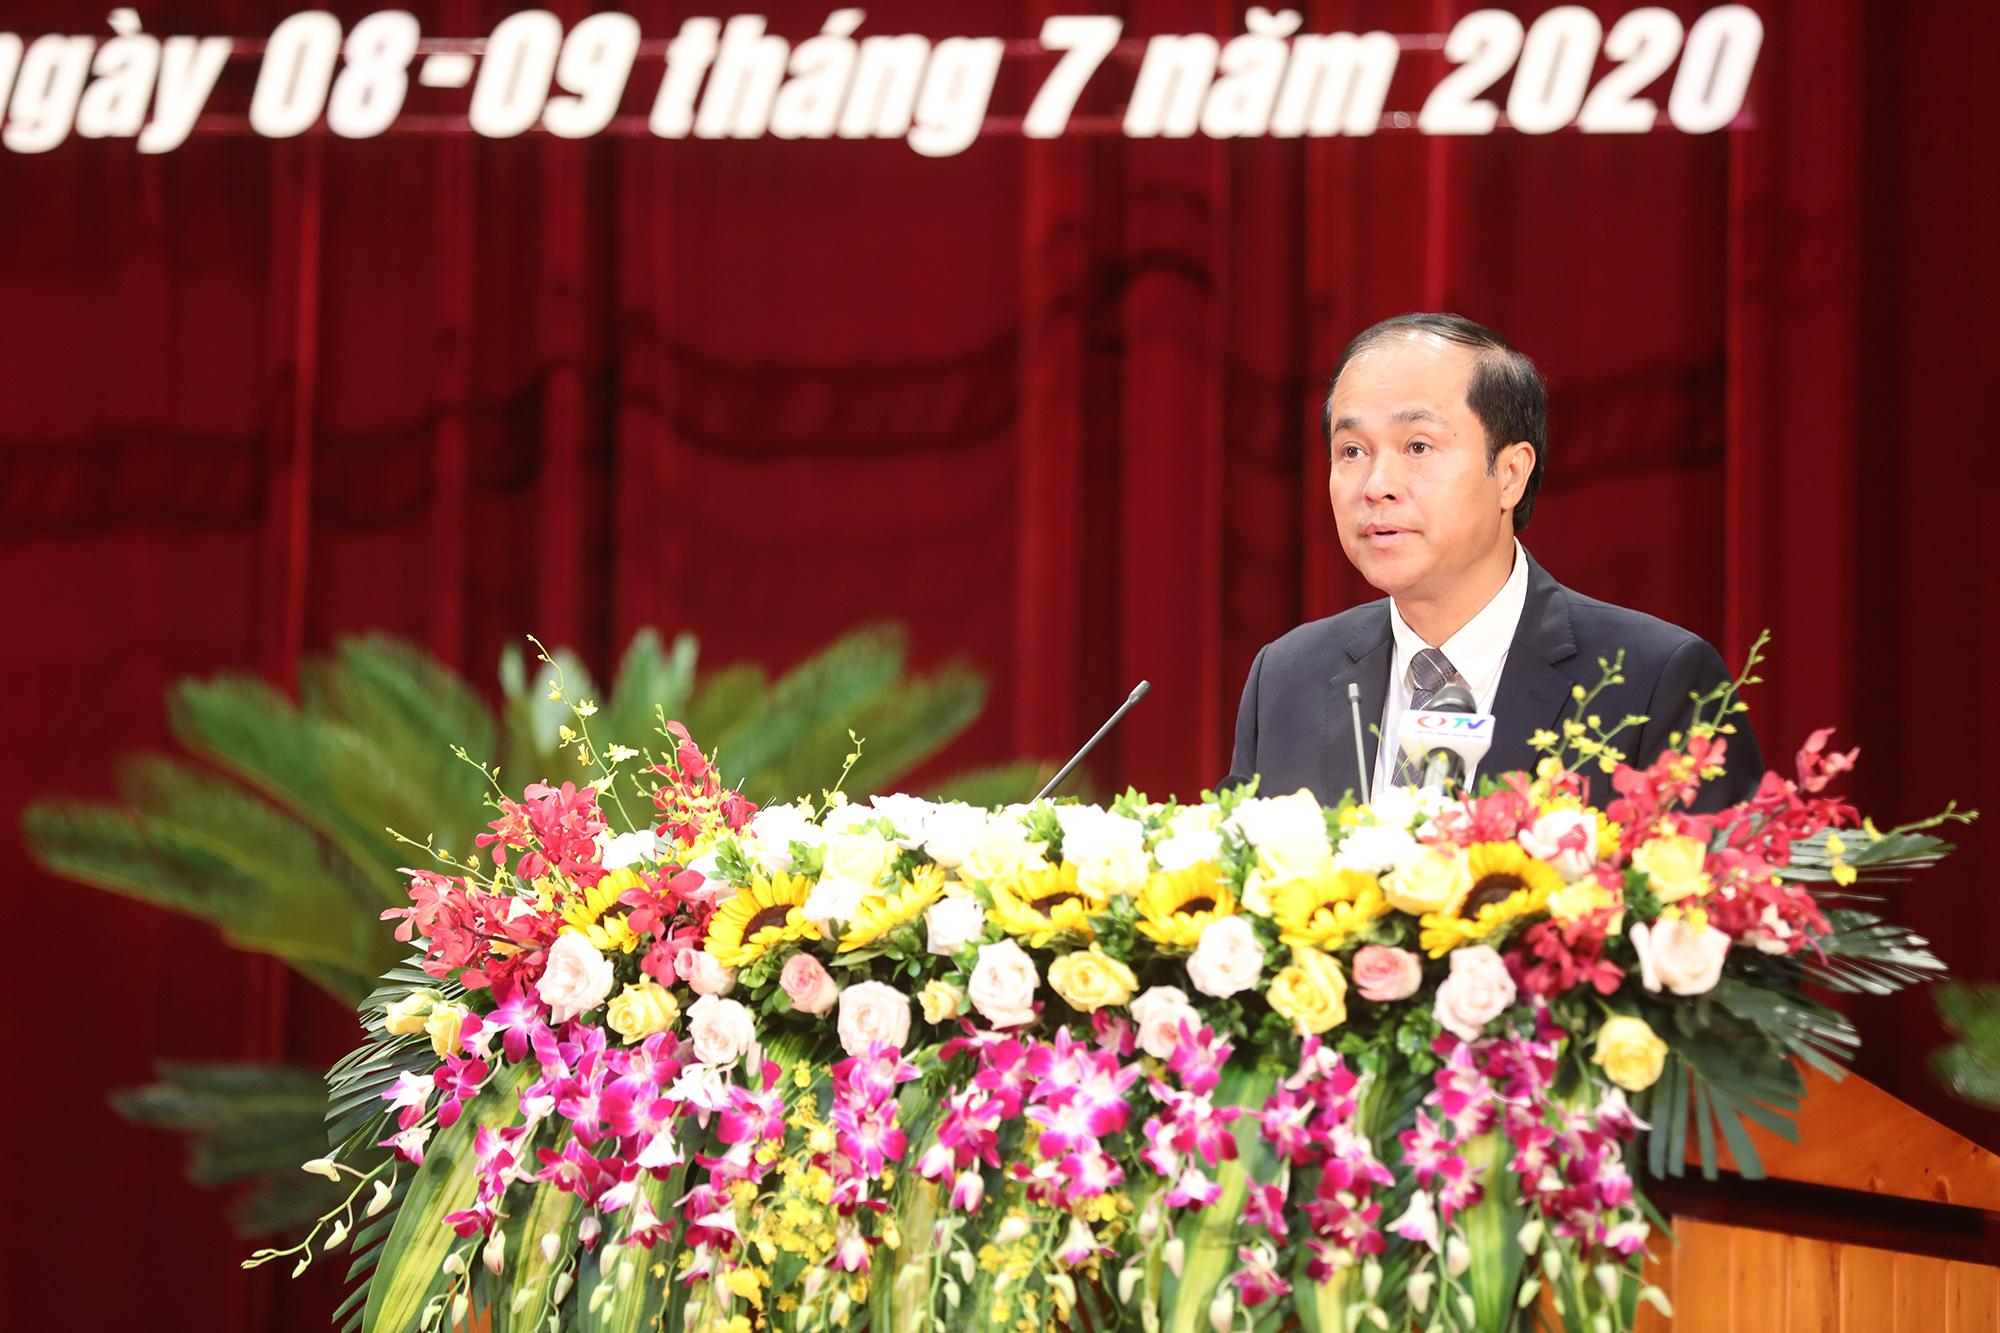 Đồng chí Trần Văn Hùng, Giám đốc Sở Kế hoạch và Đầu tư trình bày các tờ trình tại kỳ họp.